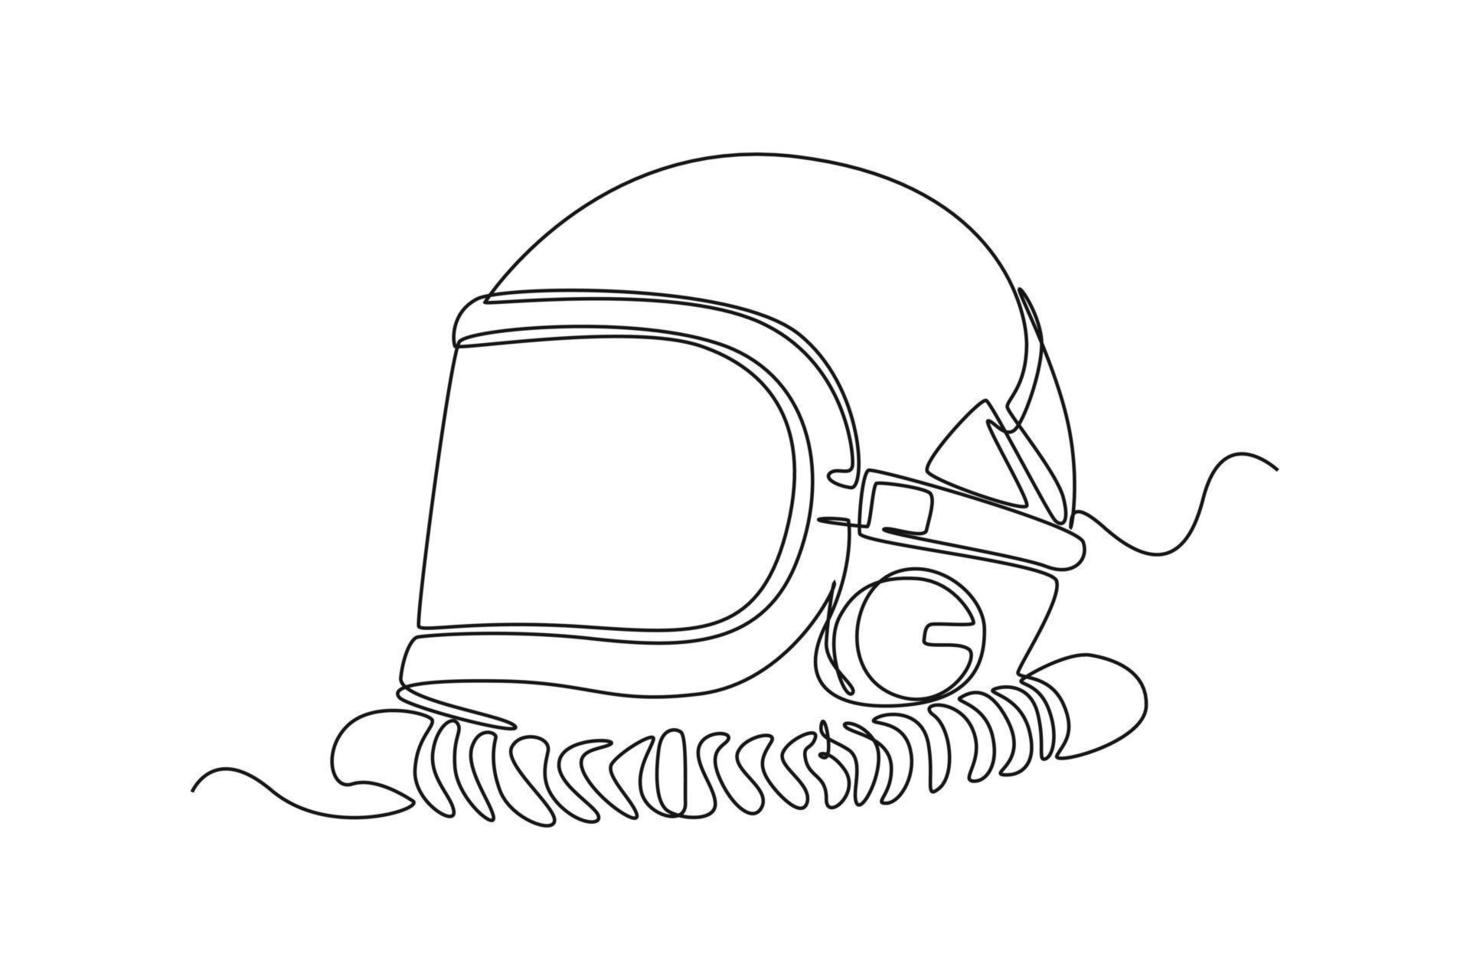 kontinuerlig ett linje teckning astronaut hjälm. yttre Plats begrepp. enda linje dra design vektor grafisk illustration.